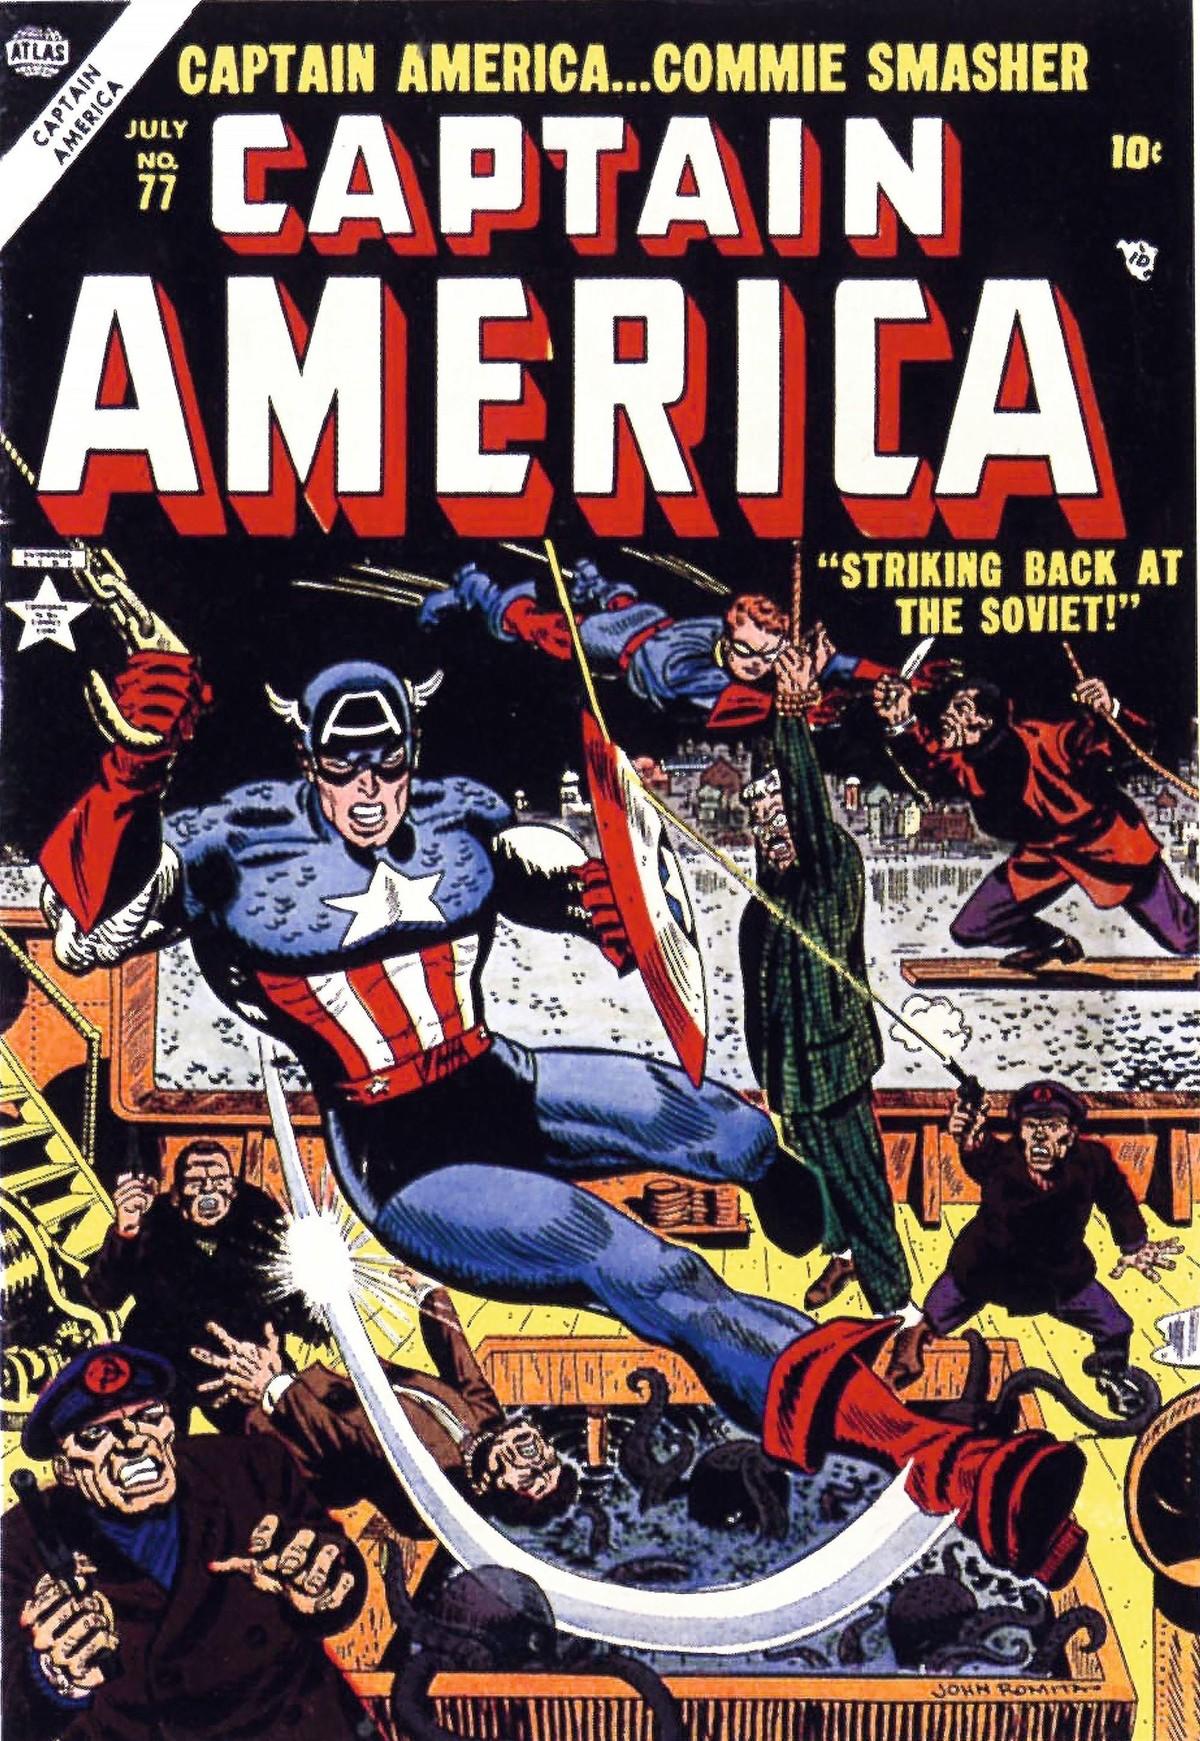 Couverture dʼun numéro de Captain America, n°77, juillet 1954.